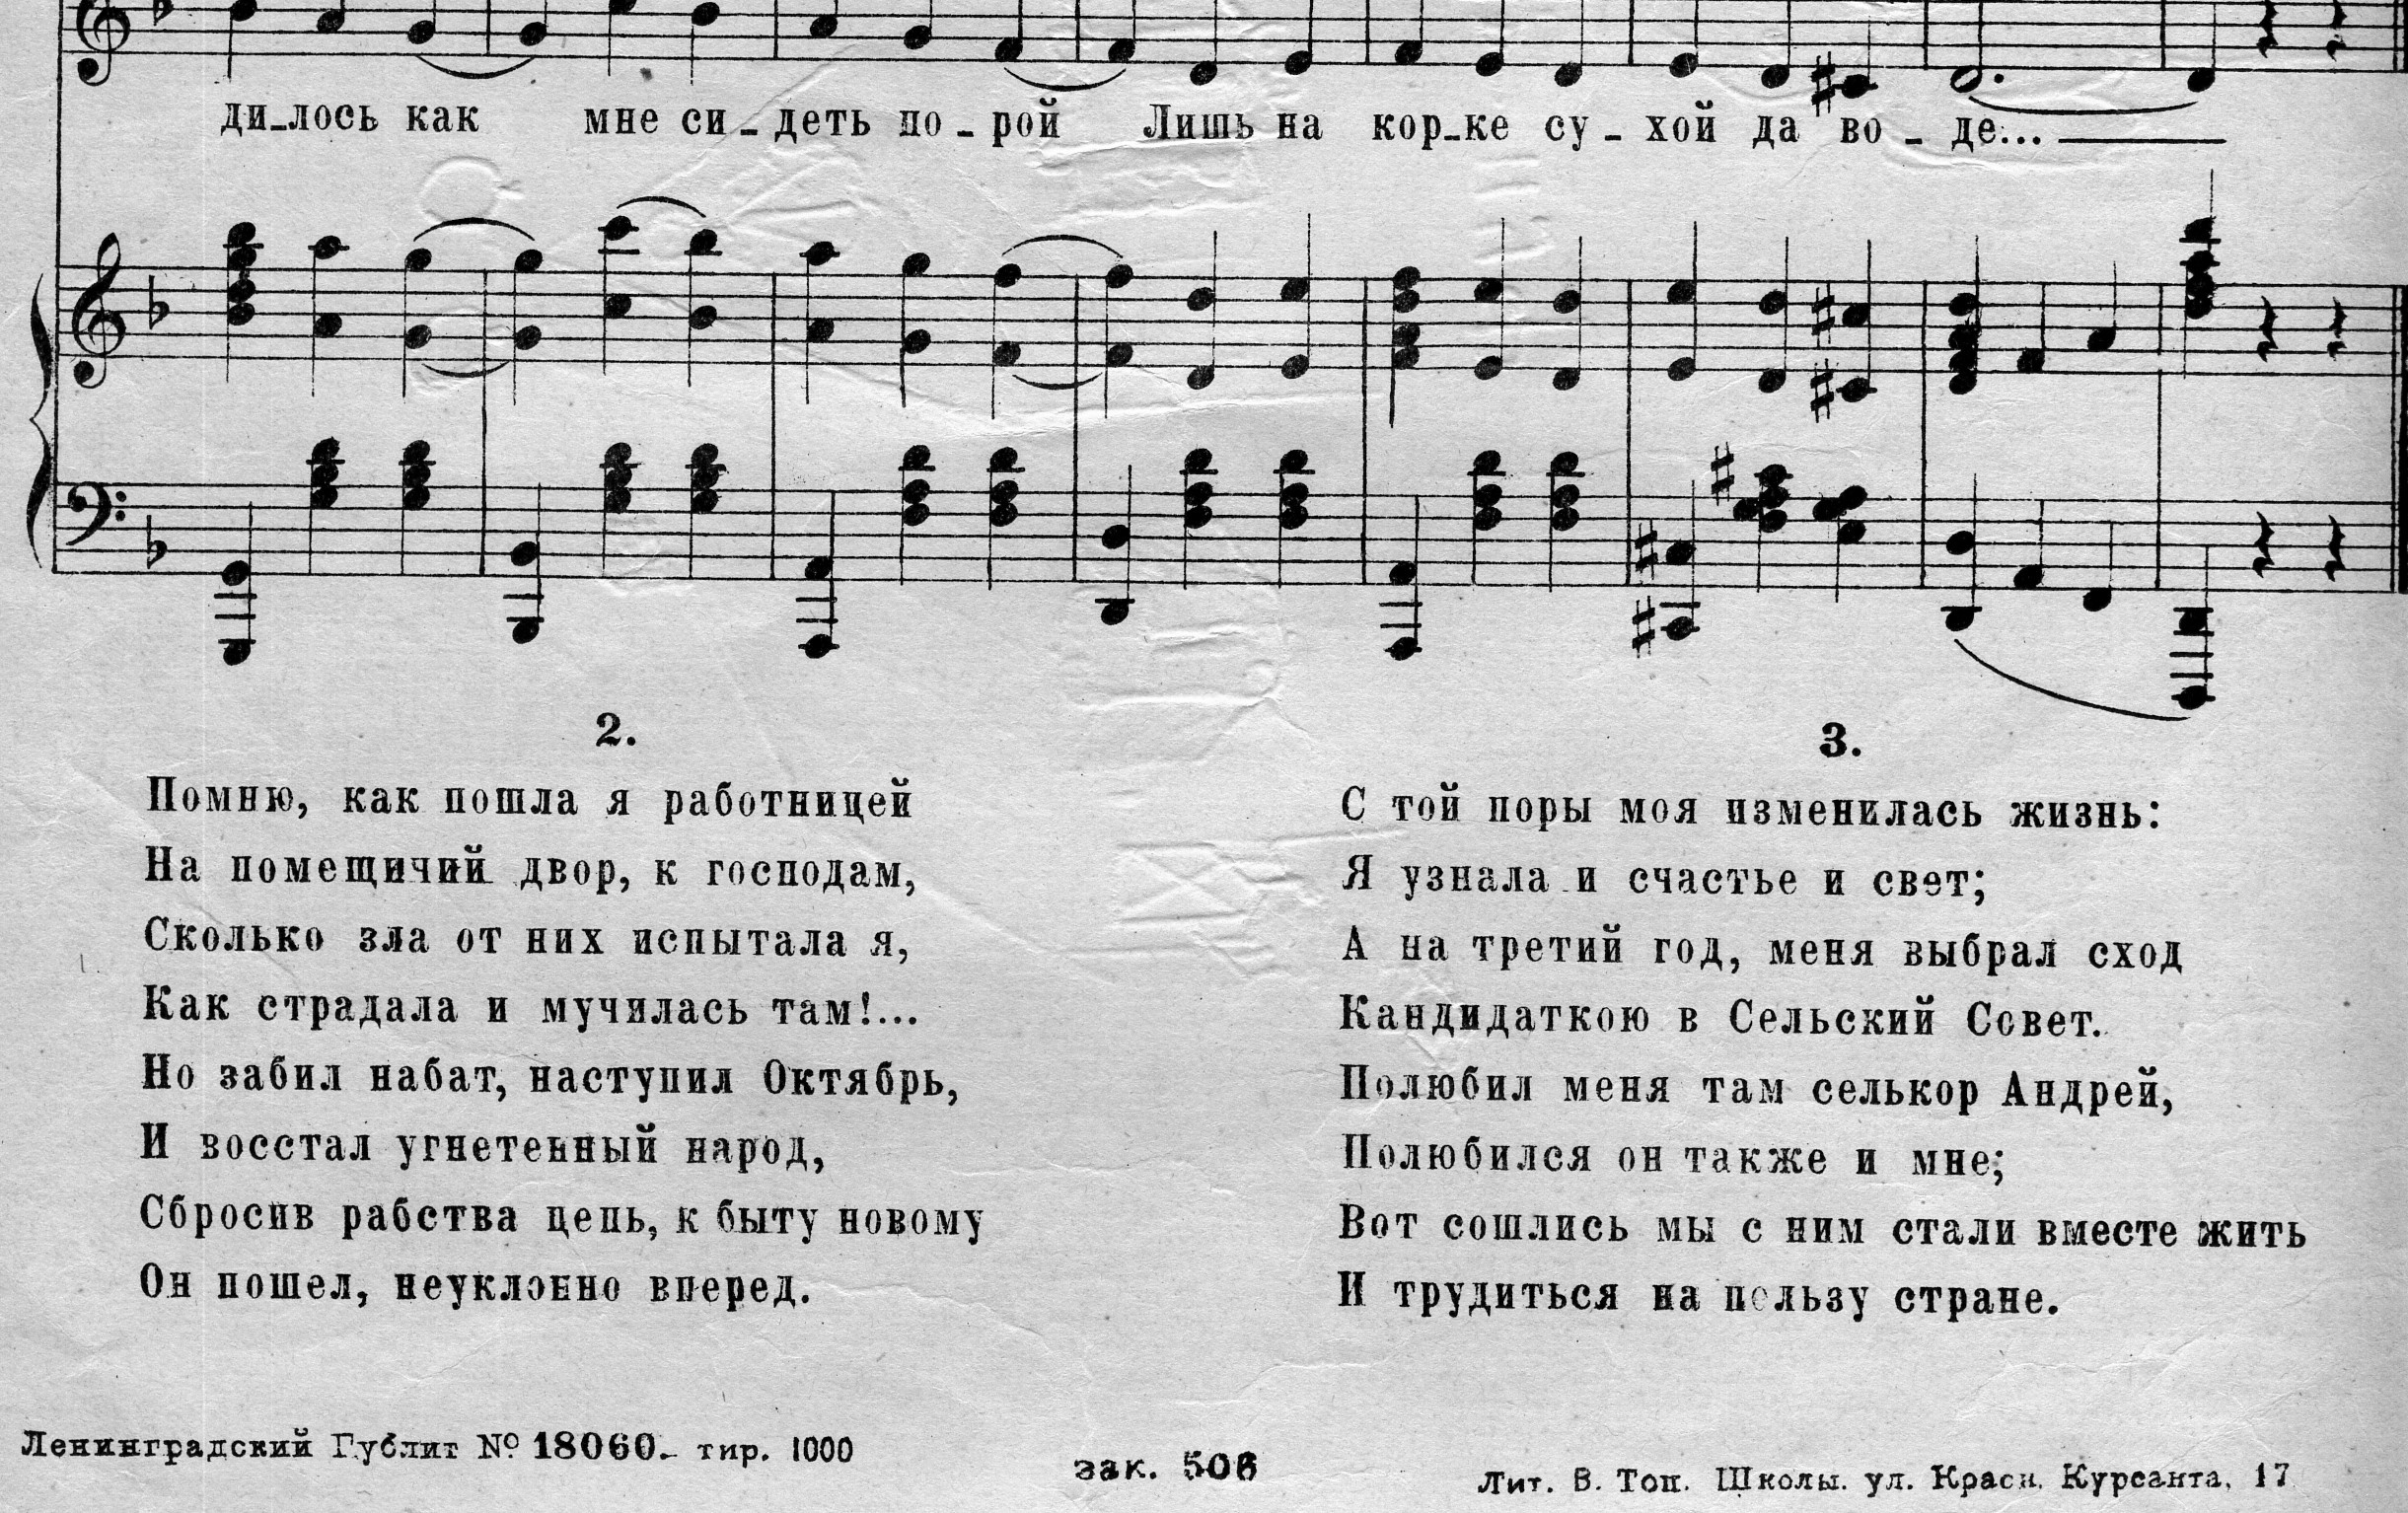 Фрагмент текста одного из многочисленных вариантов переделки текста «Кирпичиков», выпущенного в 1925 году под названием «Новая жизнь».